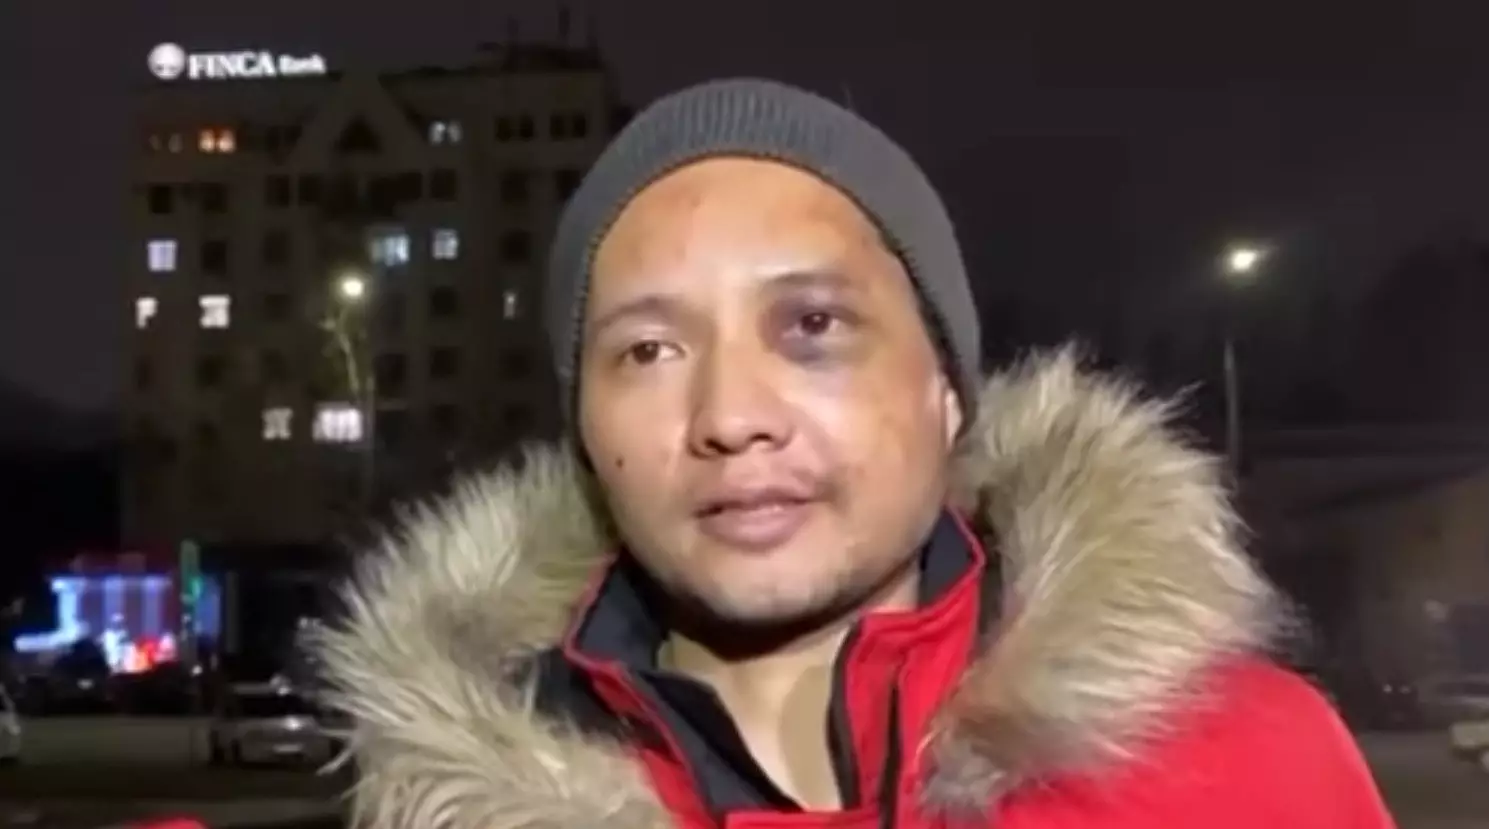 Пытки во время Кантара: Верховный суд РК отказал кыргызстанскому джазмену Викраму Рузахунову в требовании публичных извинений от МВД и гостелеканала